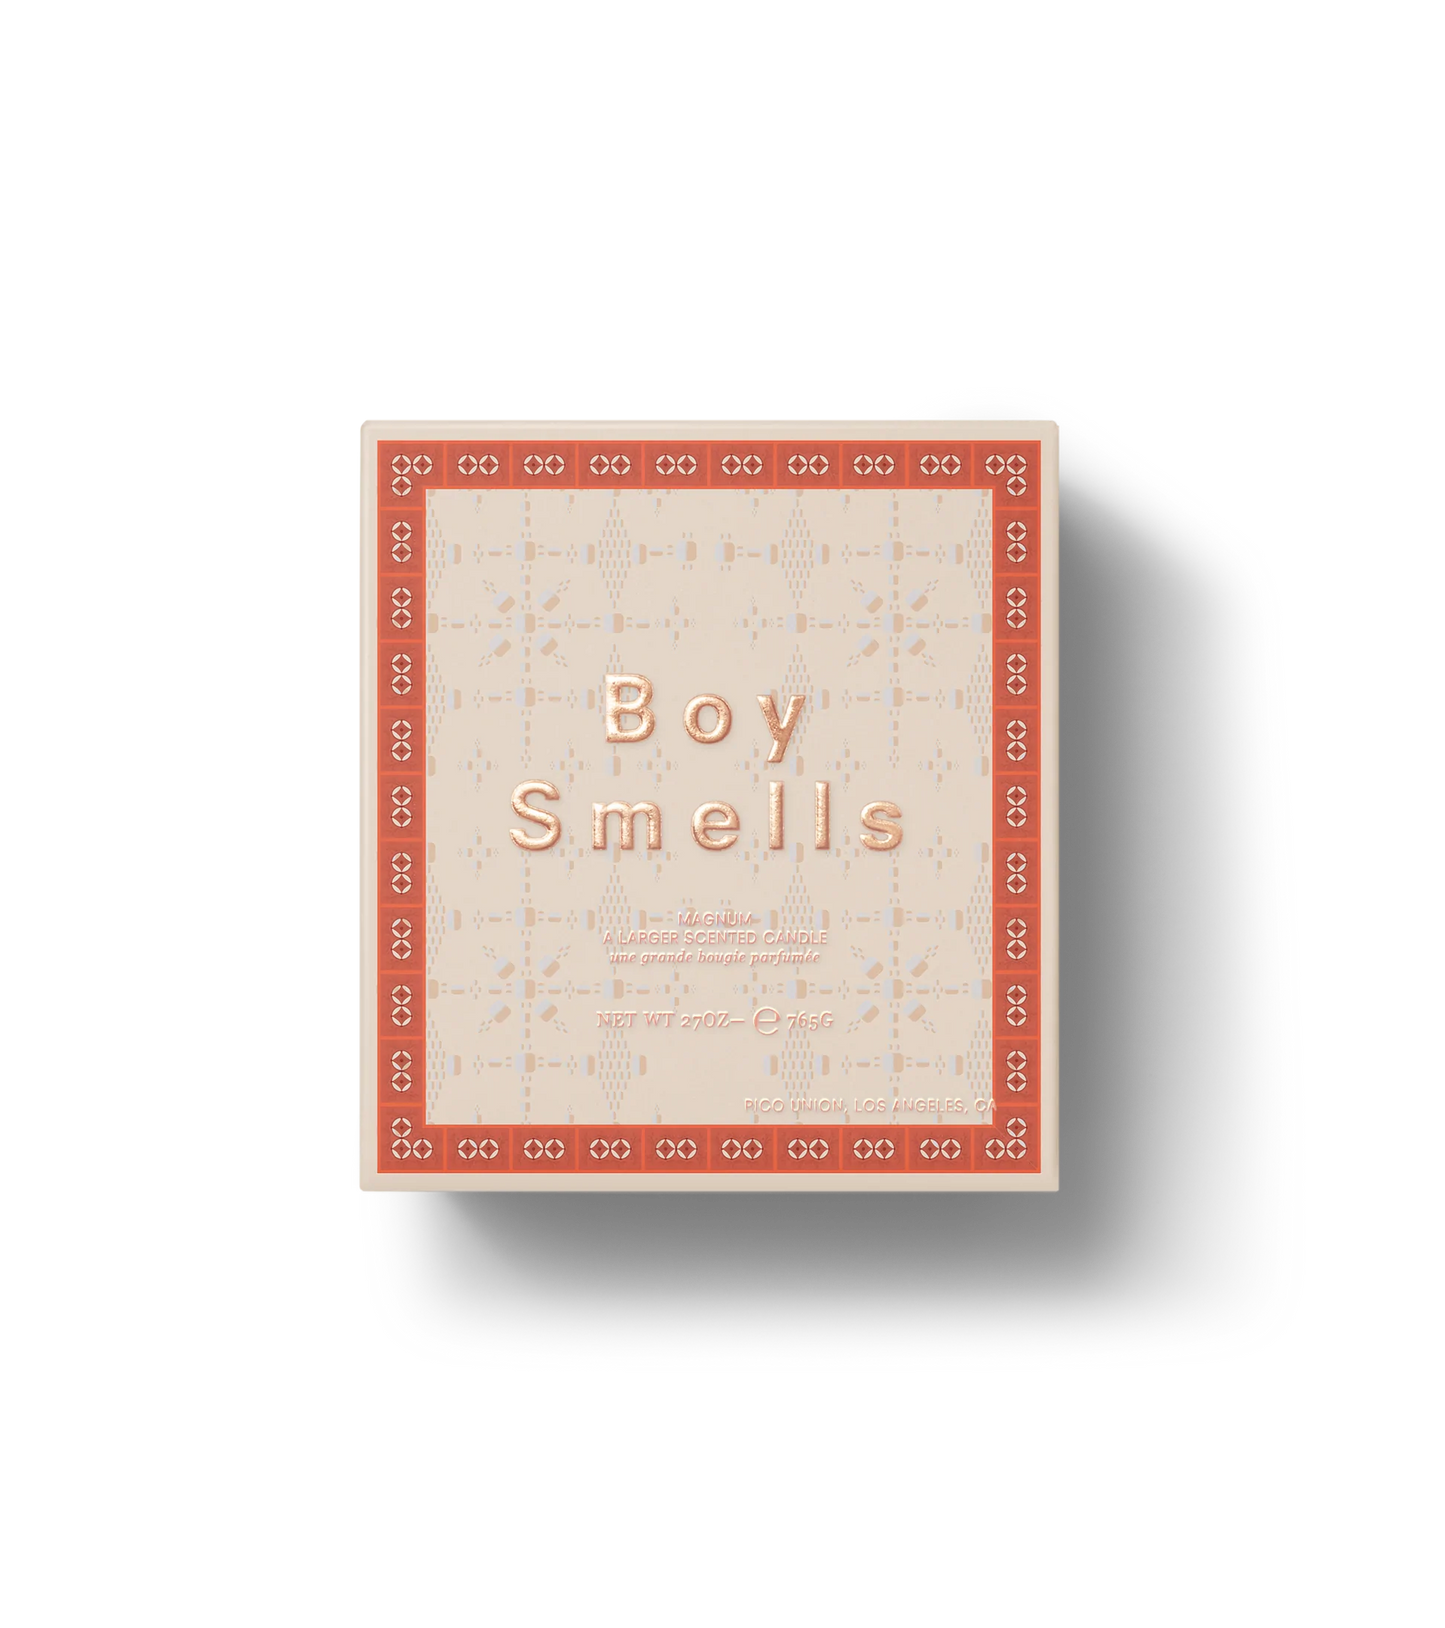 Incensorial Magnum (765g) | Boy Smells